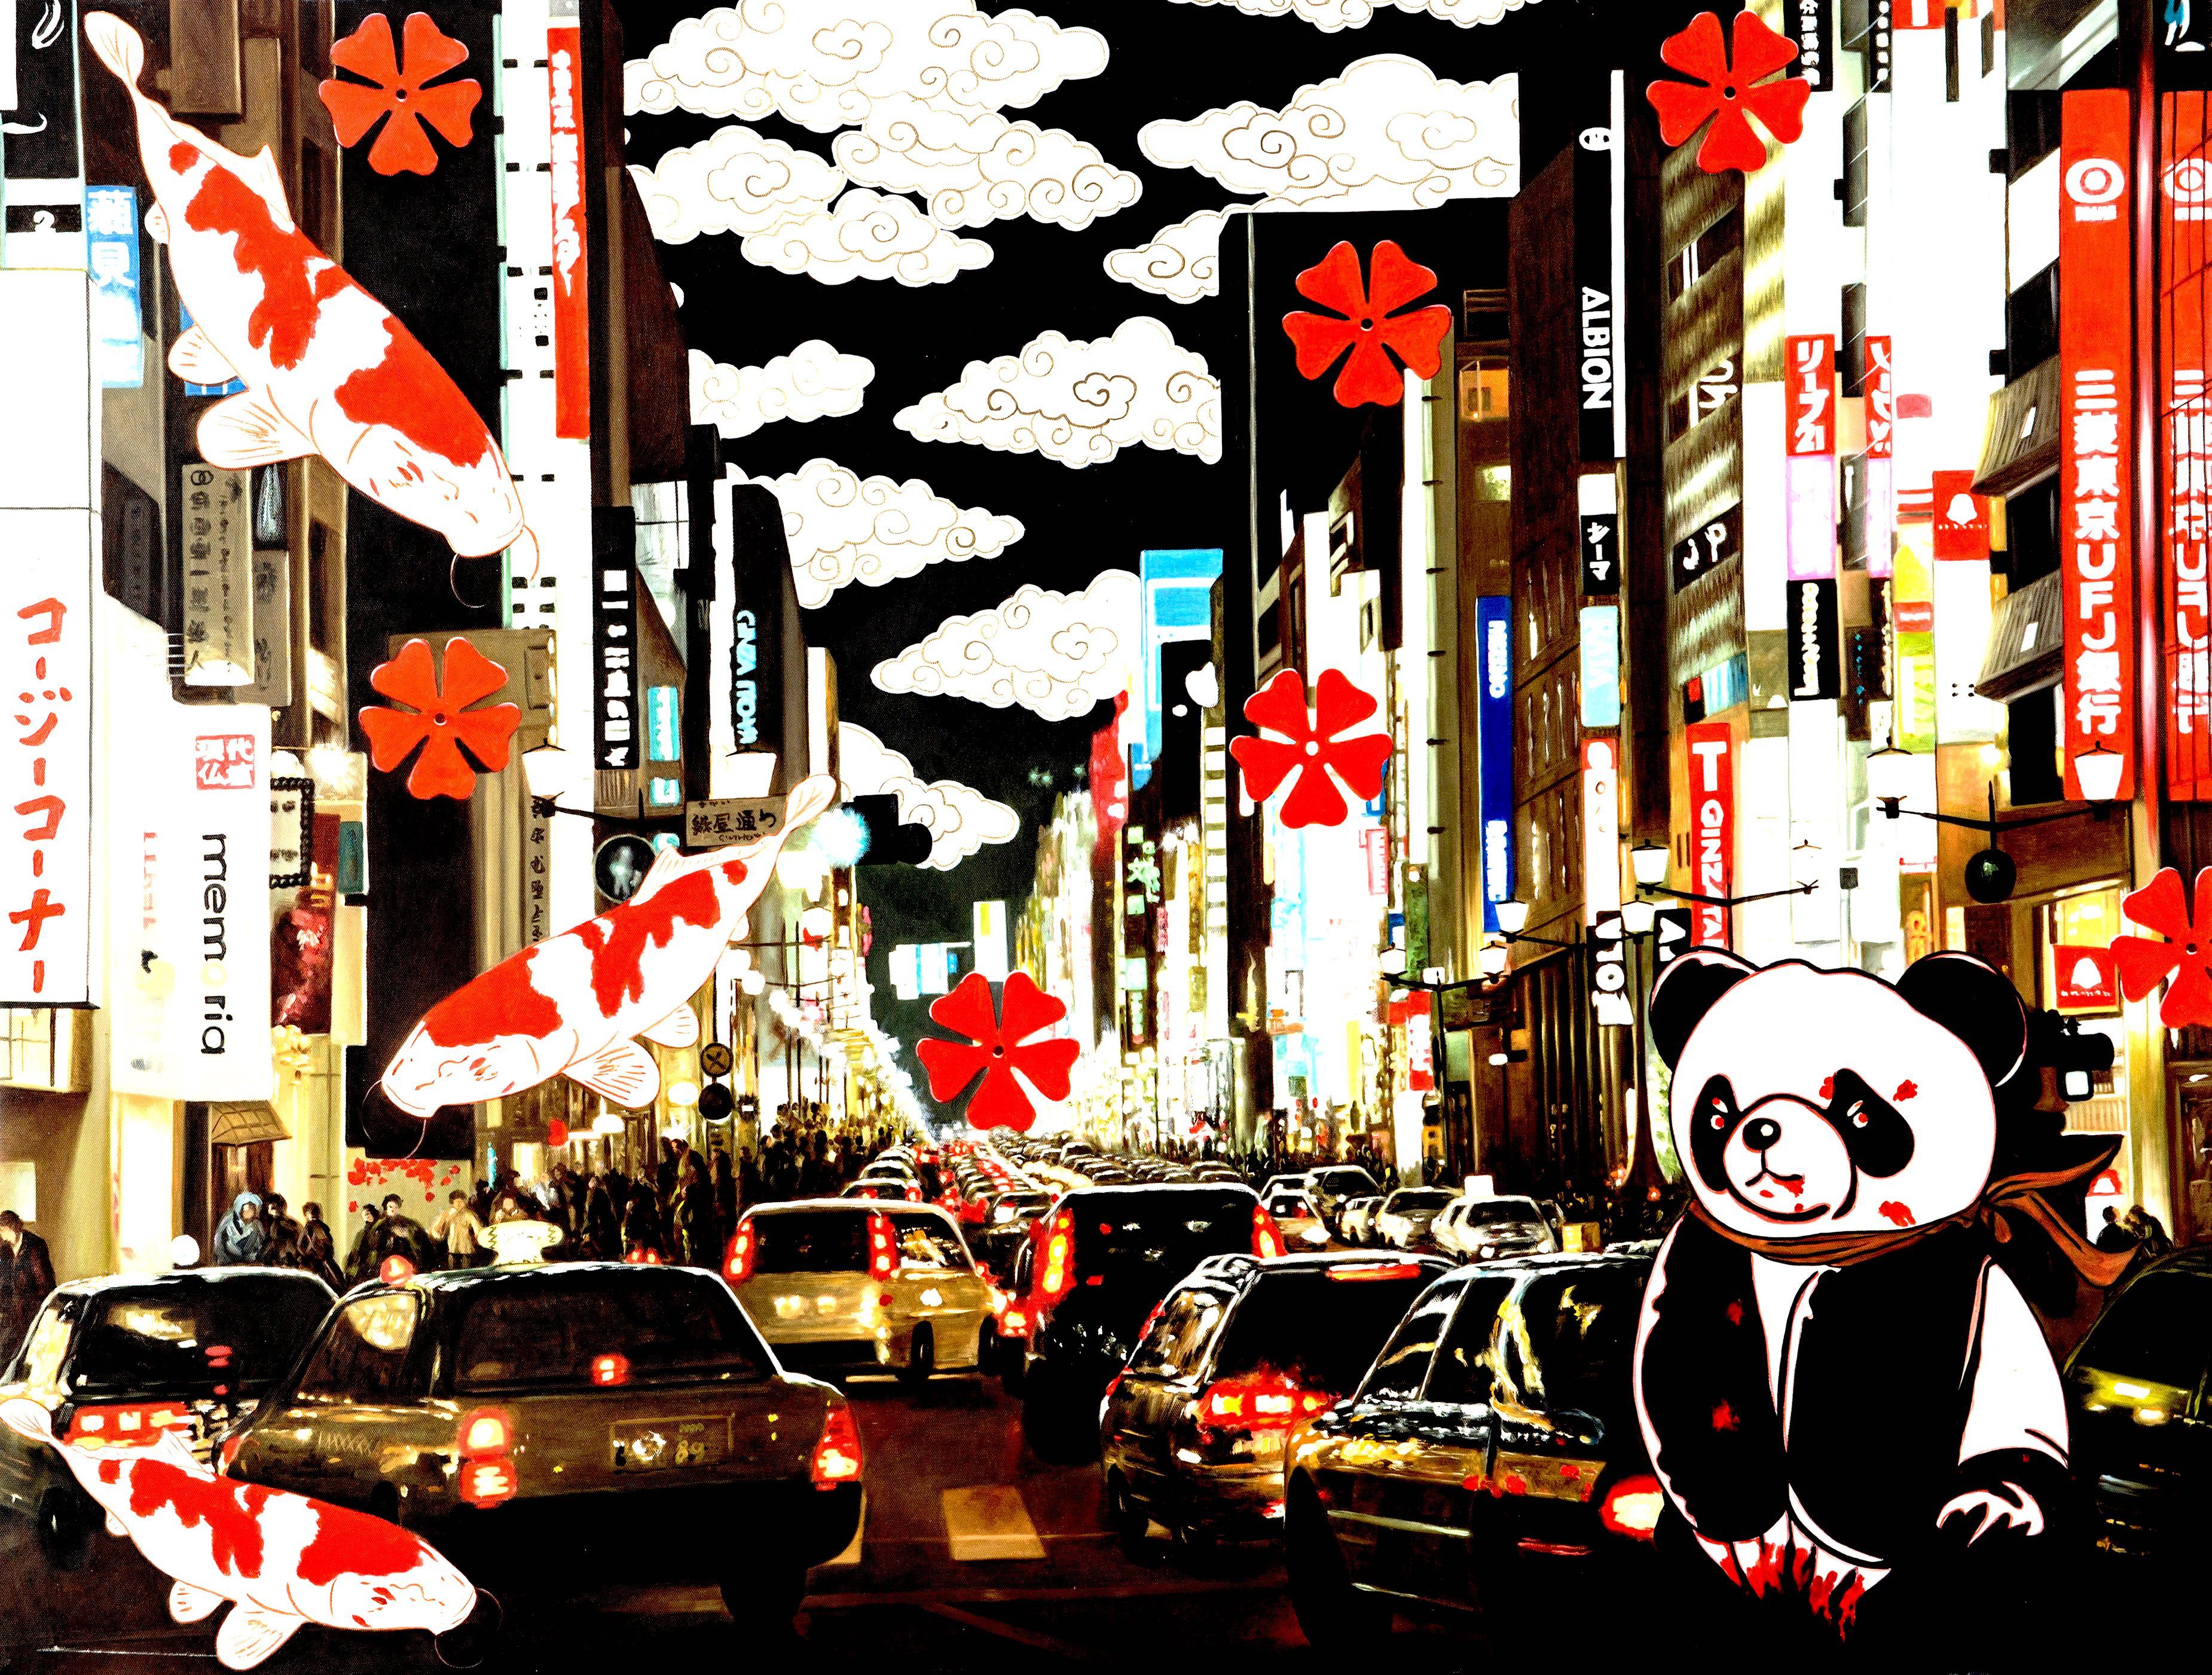 Ola Night Magic : Pandasan's Tokyo Serenade - Painting by HIRO ANDO